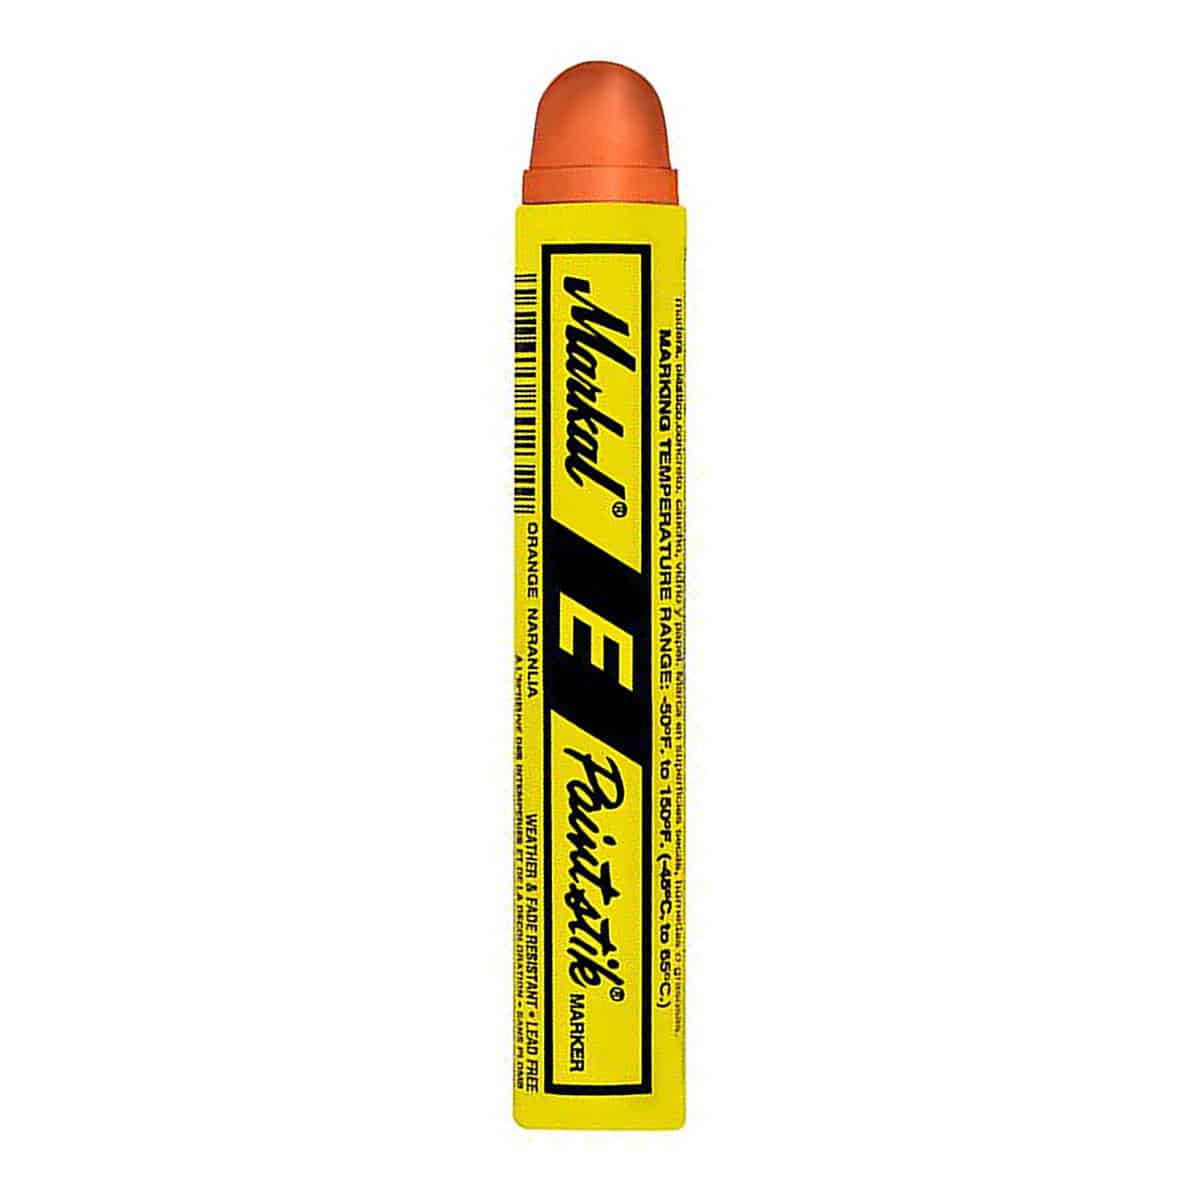 Маркер markal. Маркер-карандаш Markal b Paintstik оранжевый. Маркер 214 Ink Bullet 8мм. Твёрдый маркер-краска Markal b Paintstik. Флуоресцентный маркер.